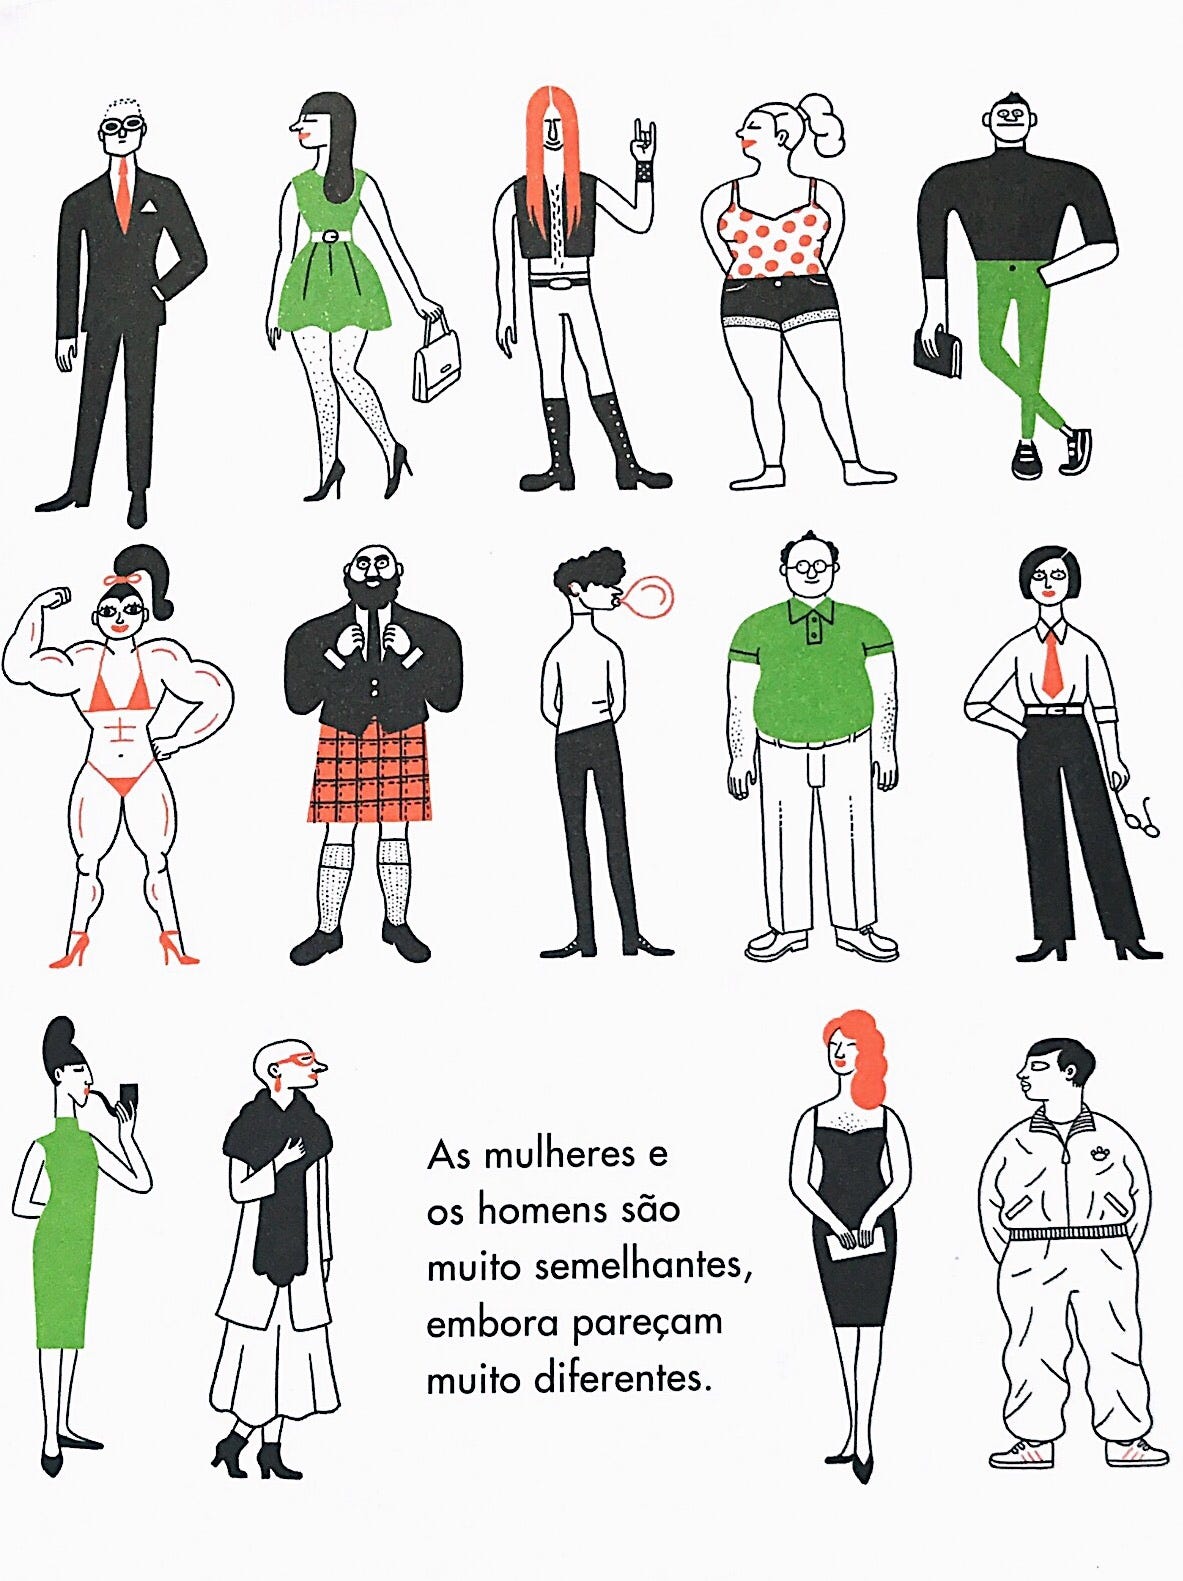 As mulheres e os homens: livro destaca a importância da igualdade de gênero  para o público infantil | by marina | Revista Subjetiva | Medium